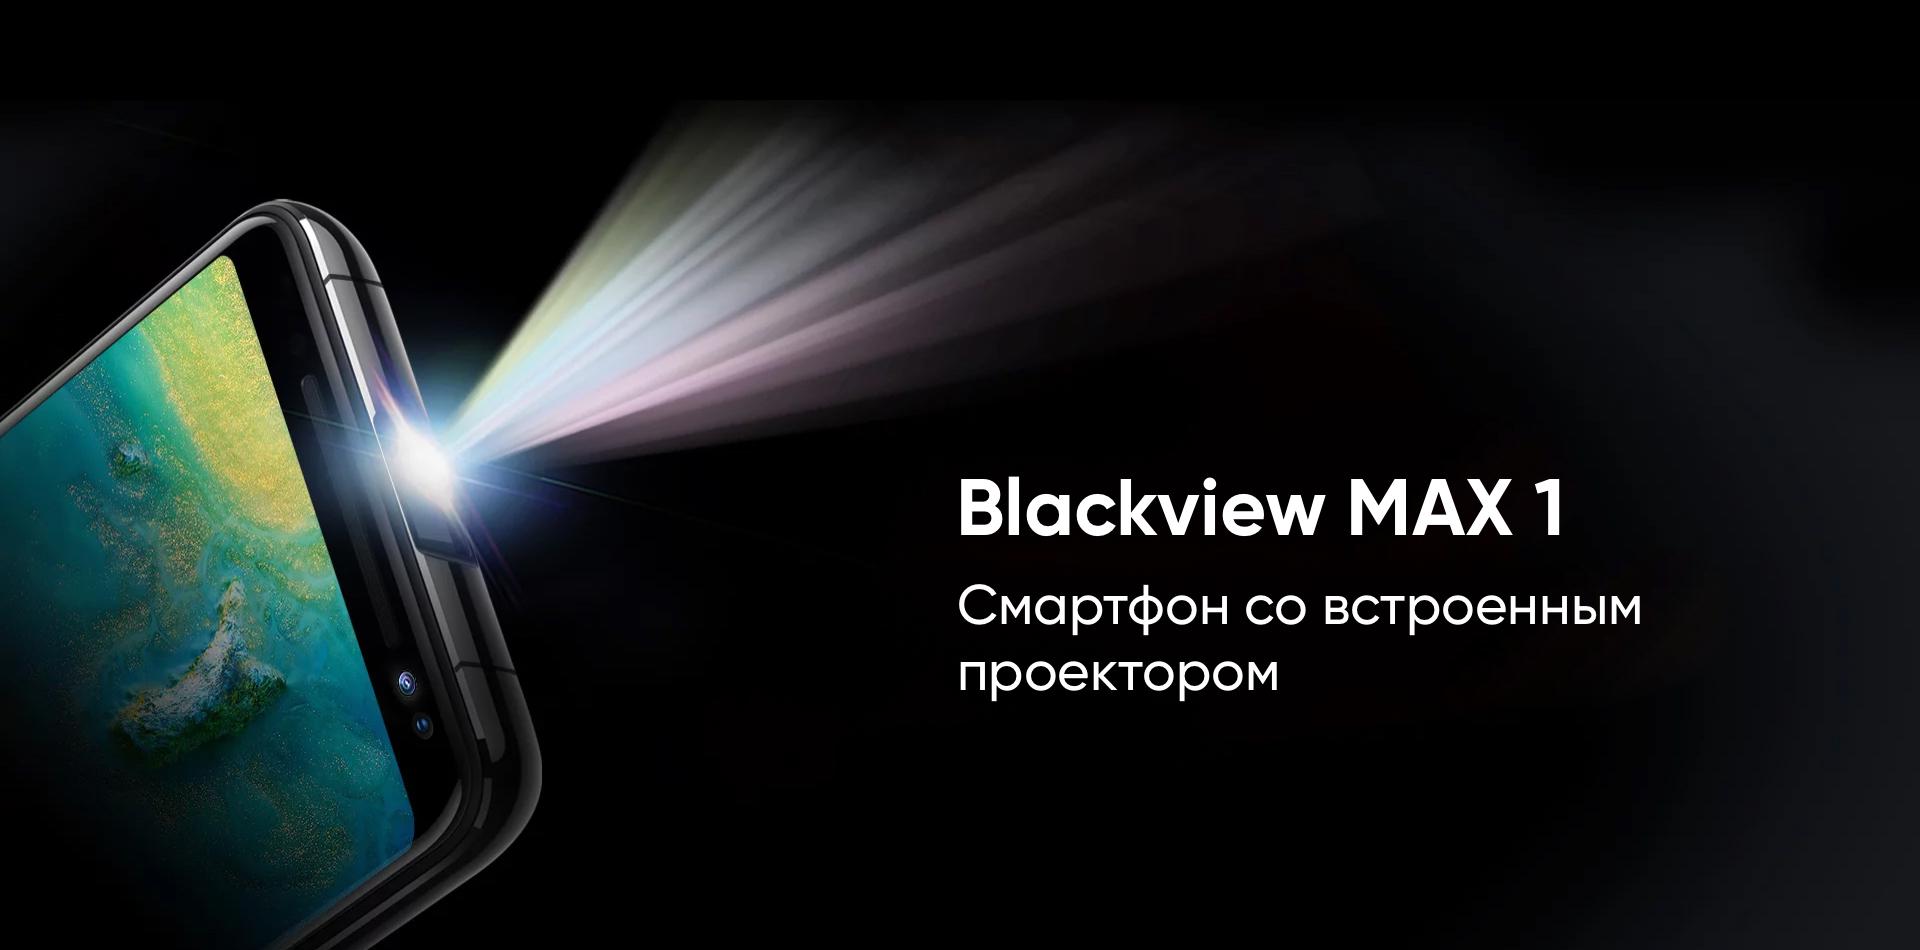 мобильные телефоны blackview официальный сайт